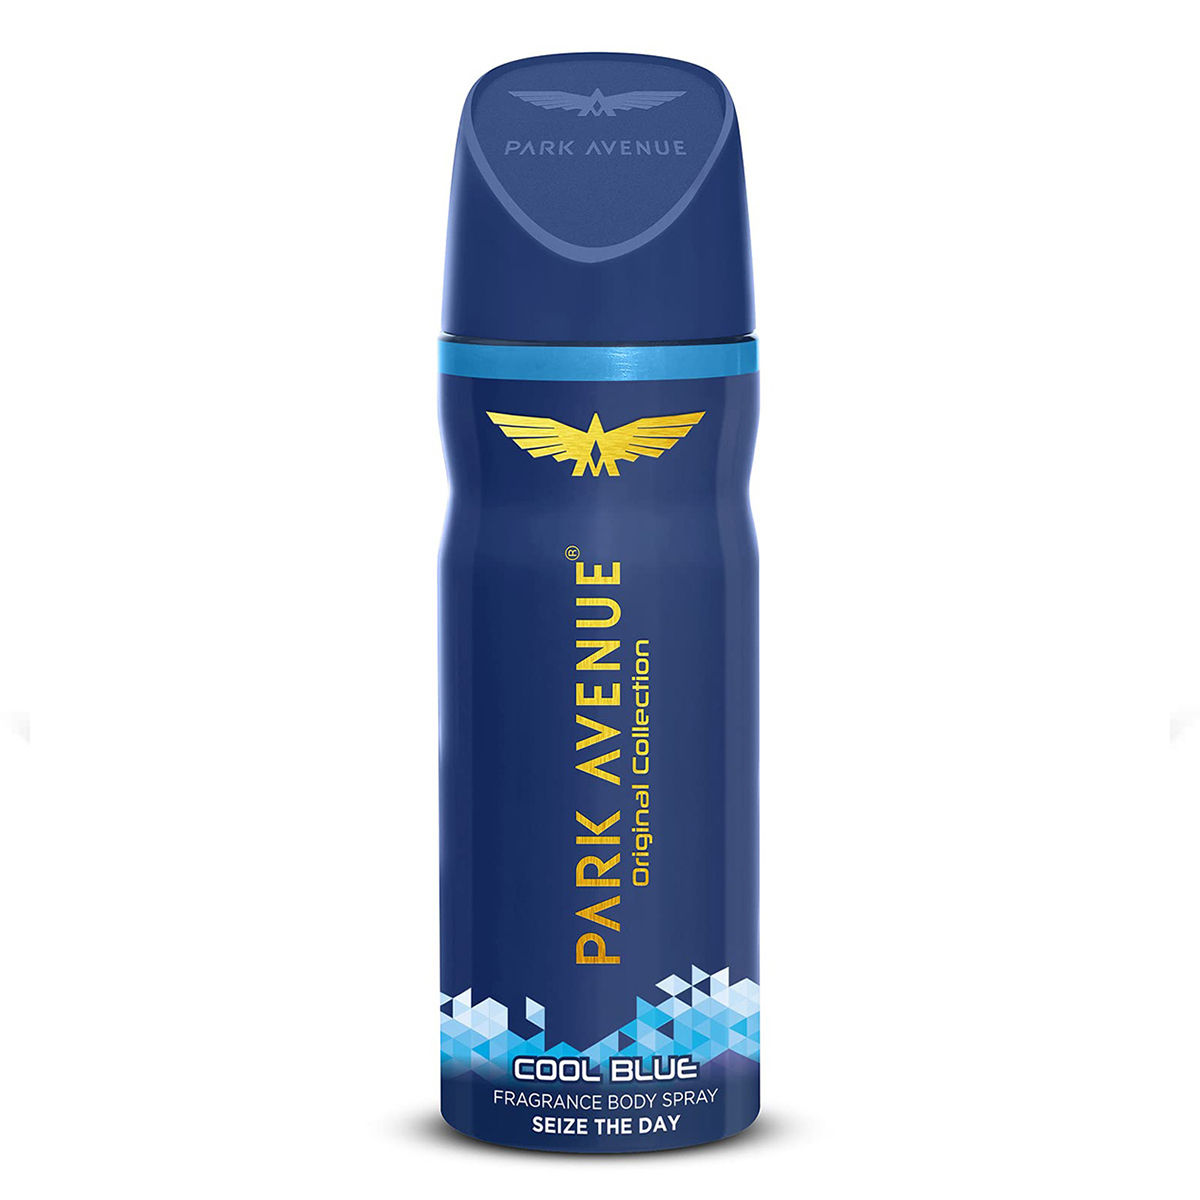 Buy Park Avenue Cool Blue Freshness Deodorant Spray for Men, 100 gm Online